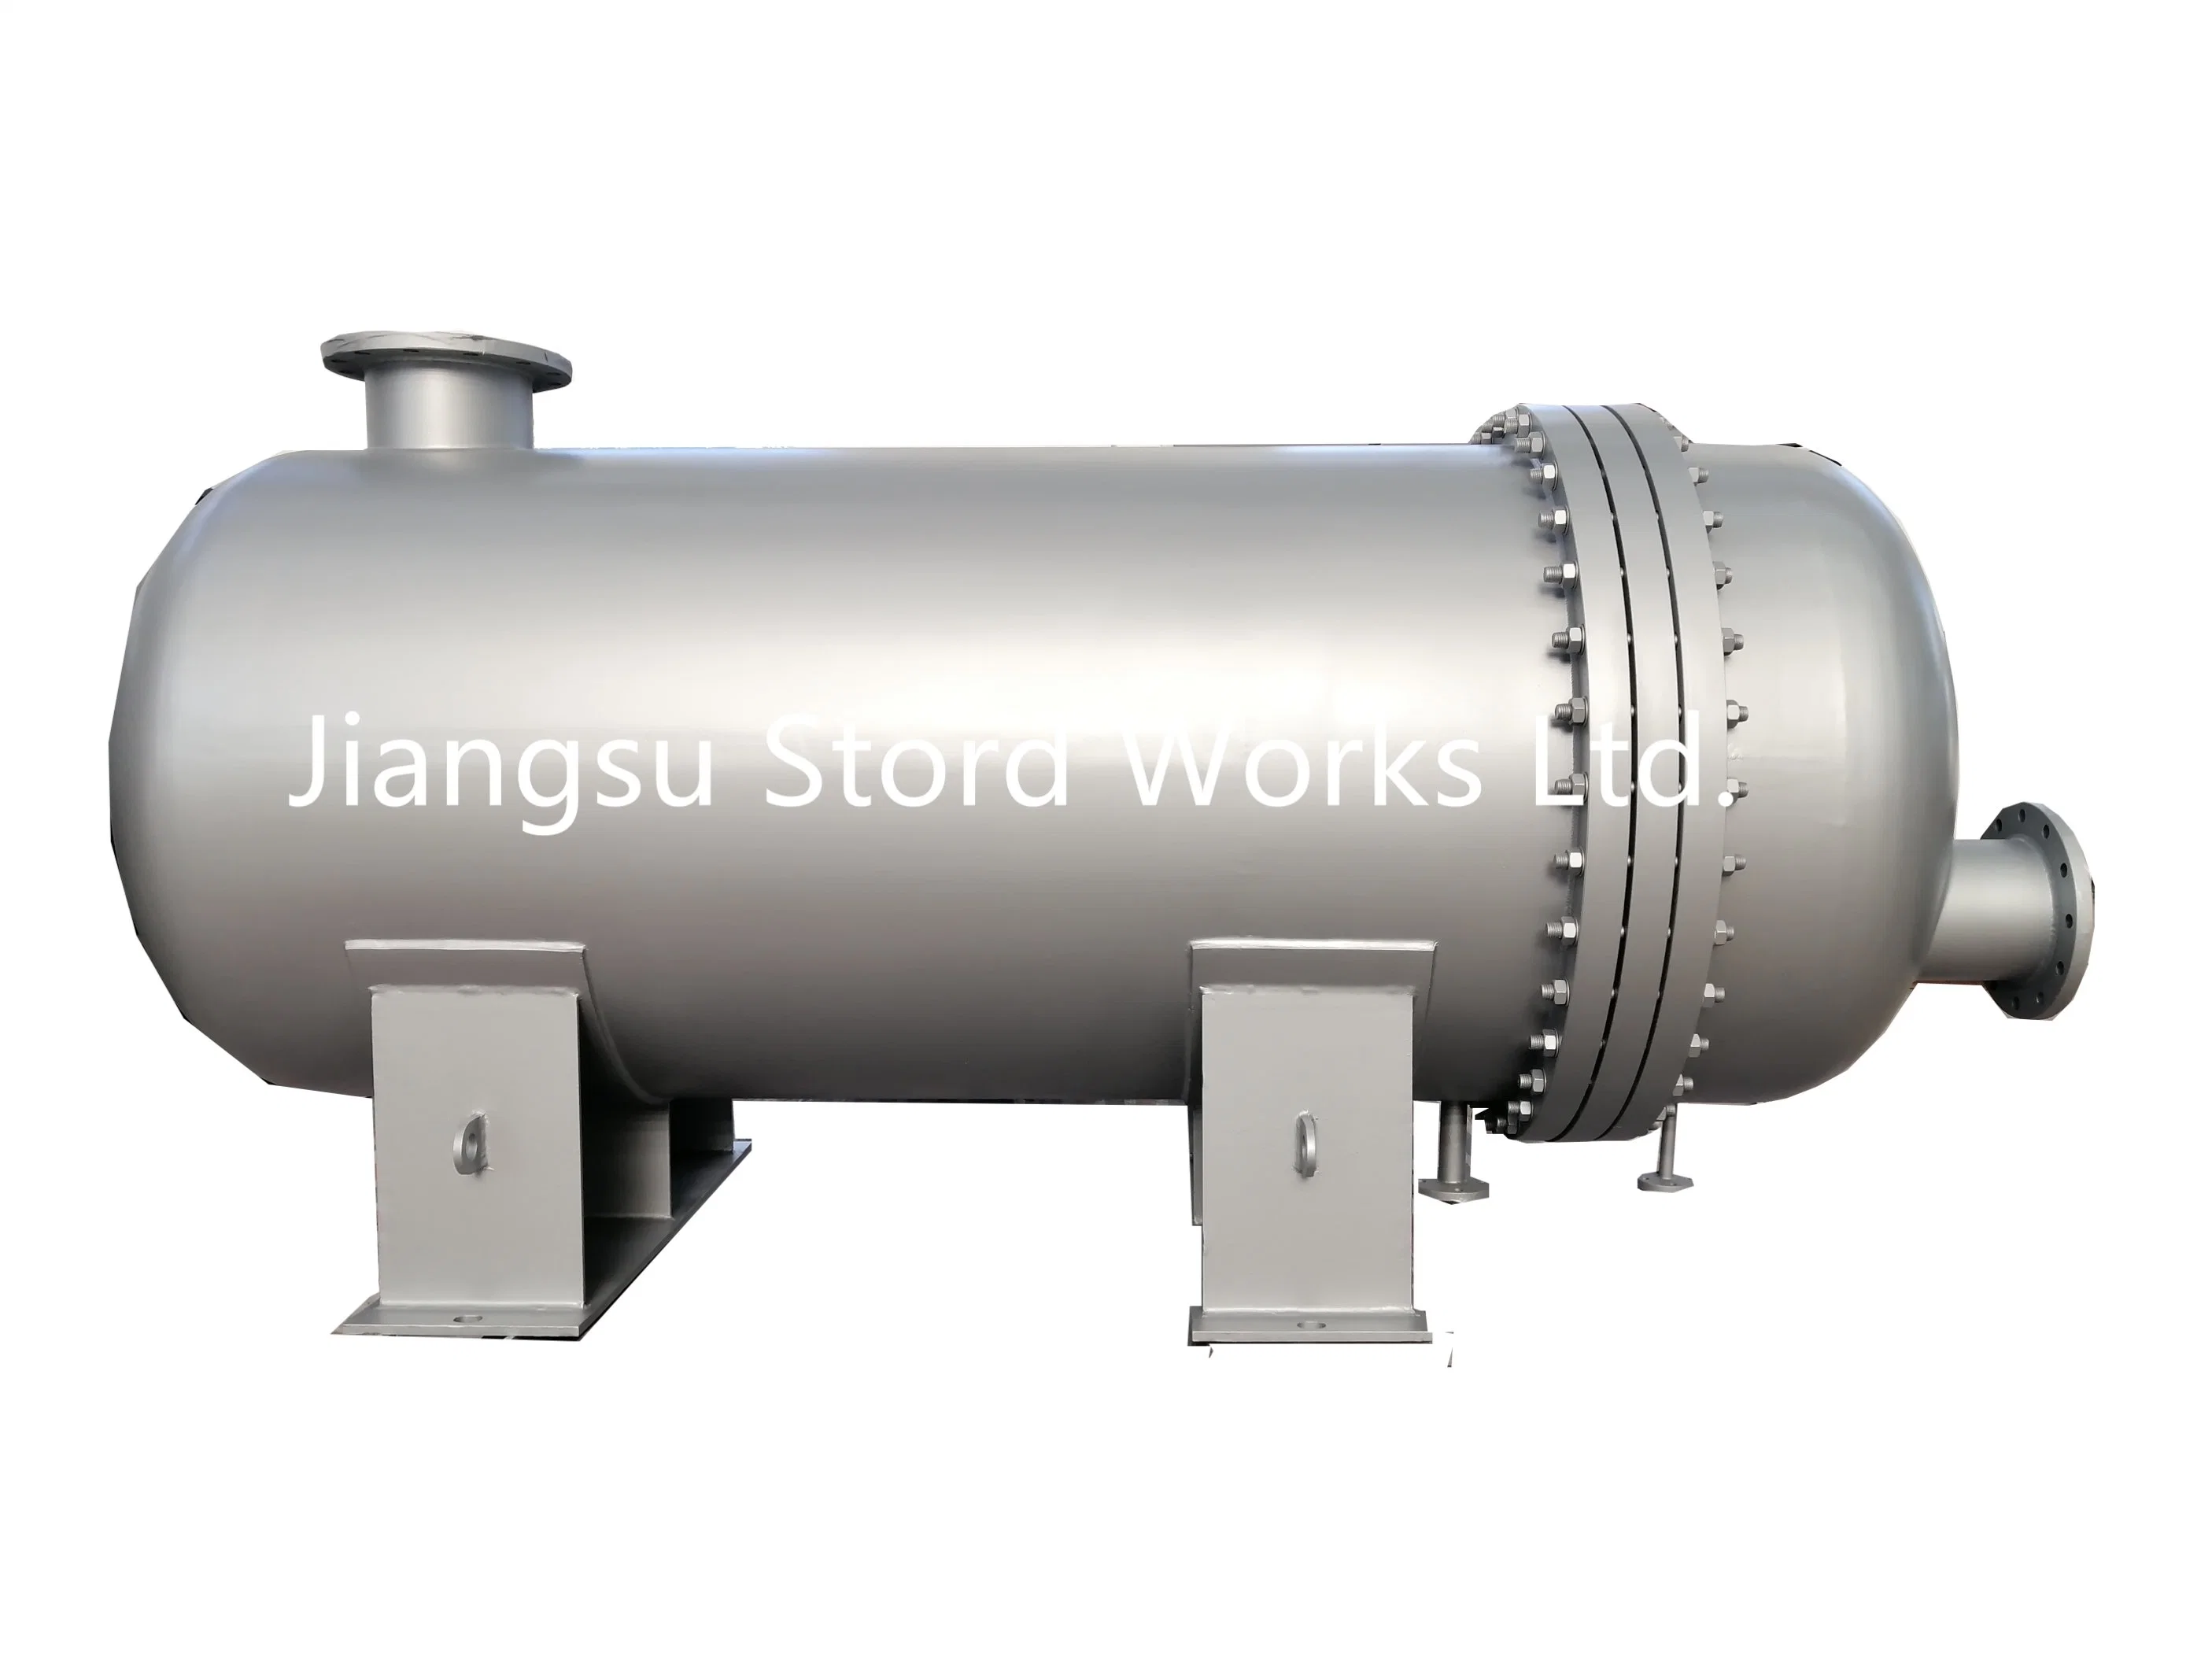 Stordworks Hot Sale Tubular Reactor Pressure Vessel for Manufacturing Plant